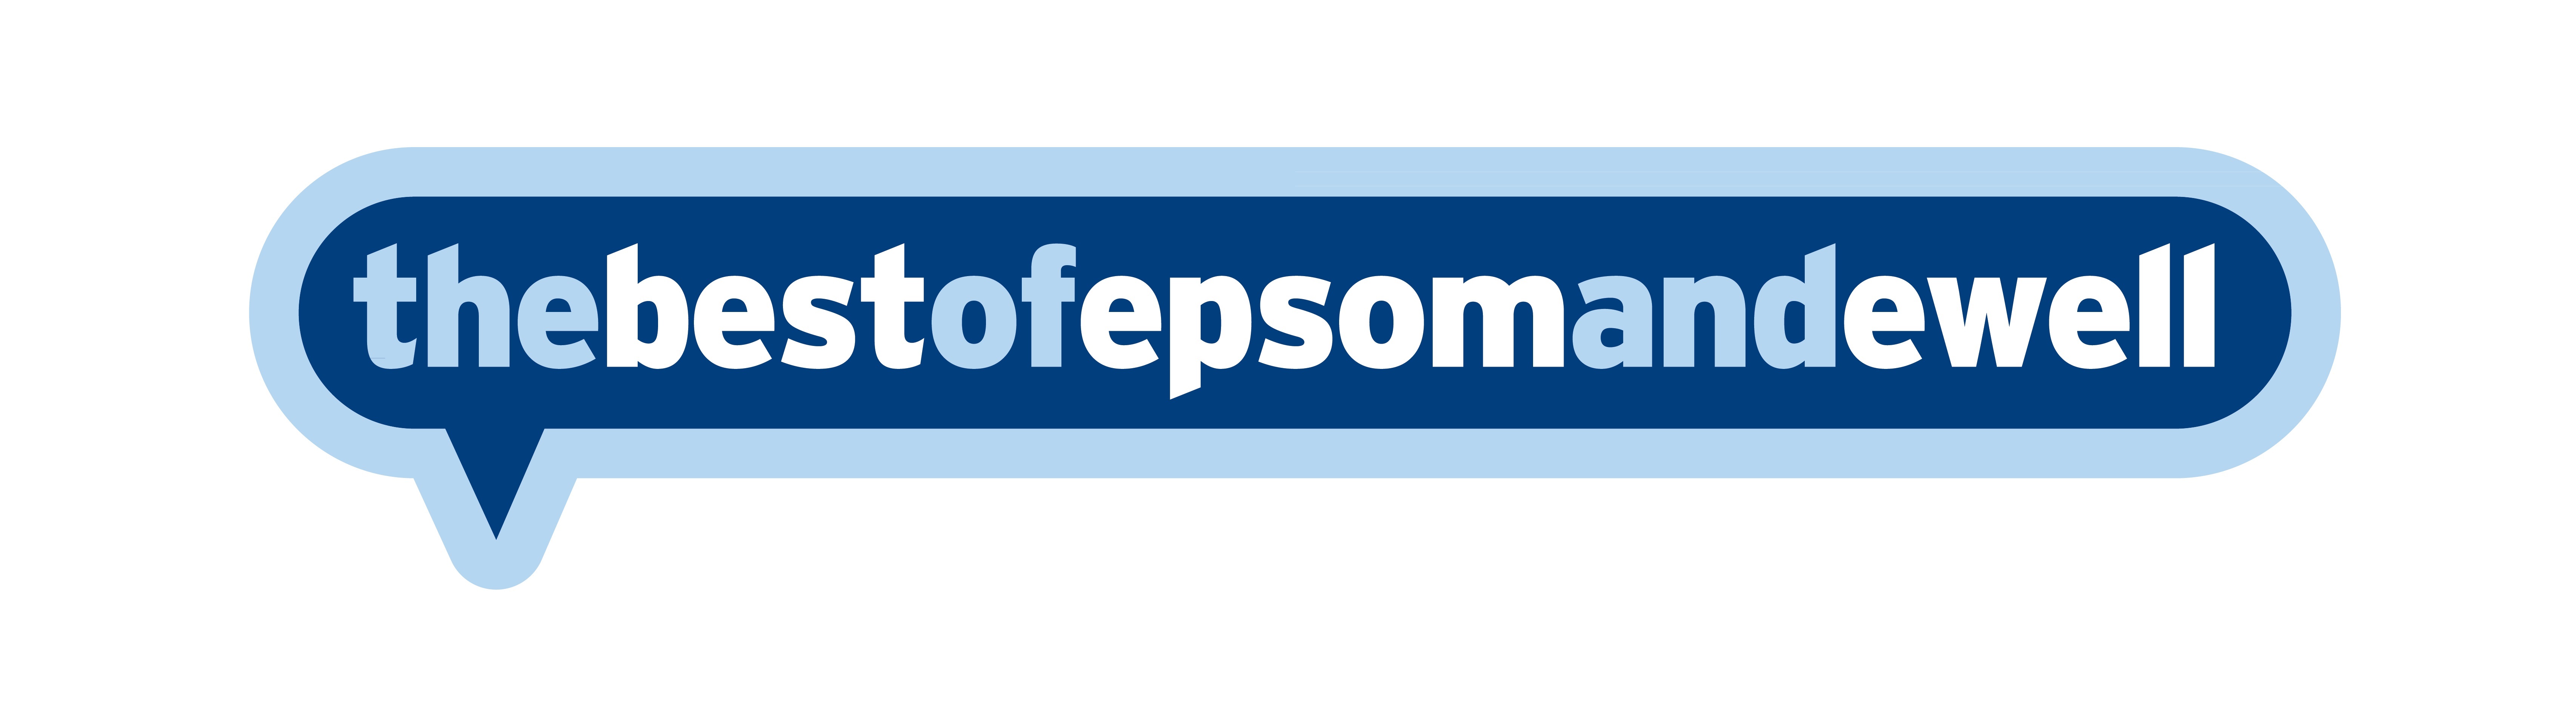 The Best of Epsom & Ewell logo